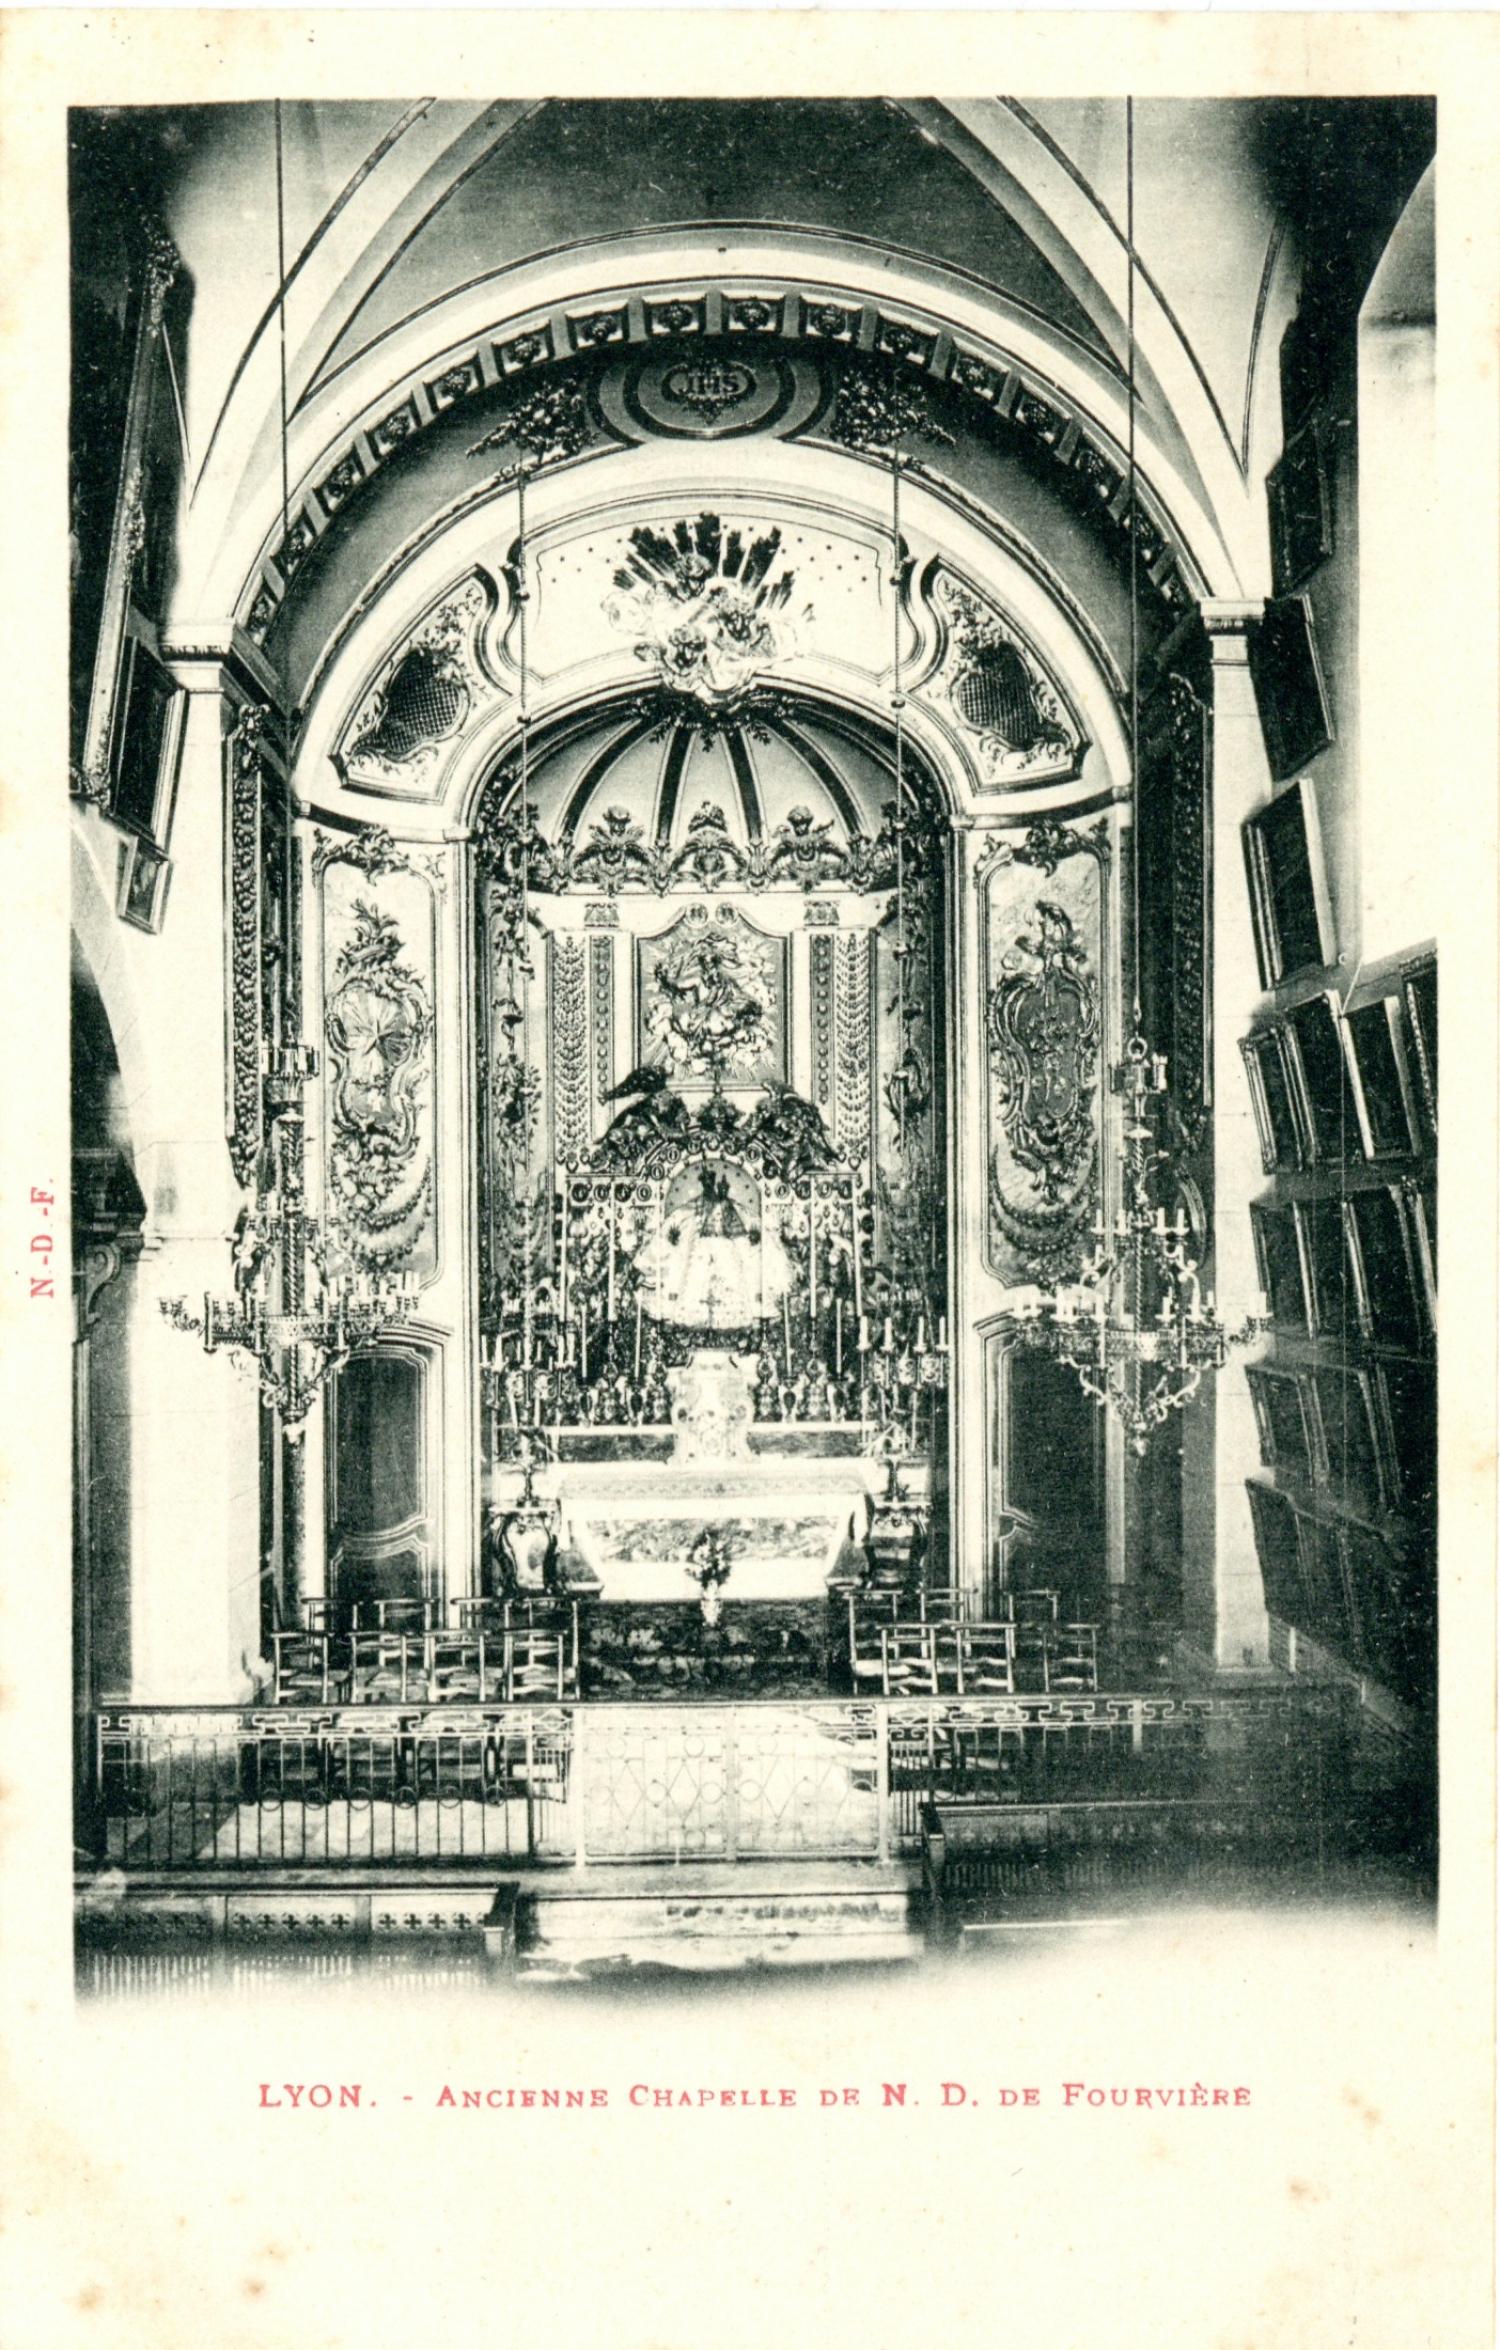 Lyon : Ancienne Chapelle de N.D. de Fourvière.